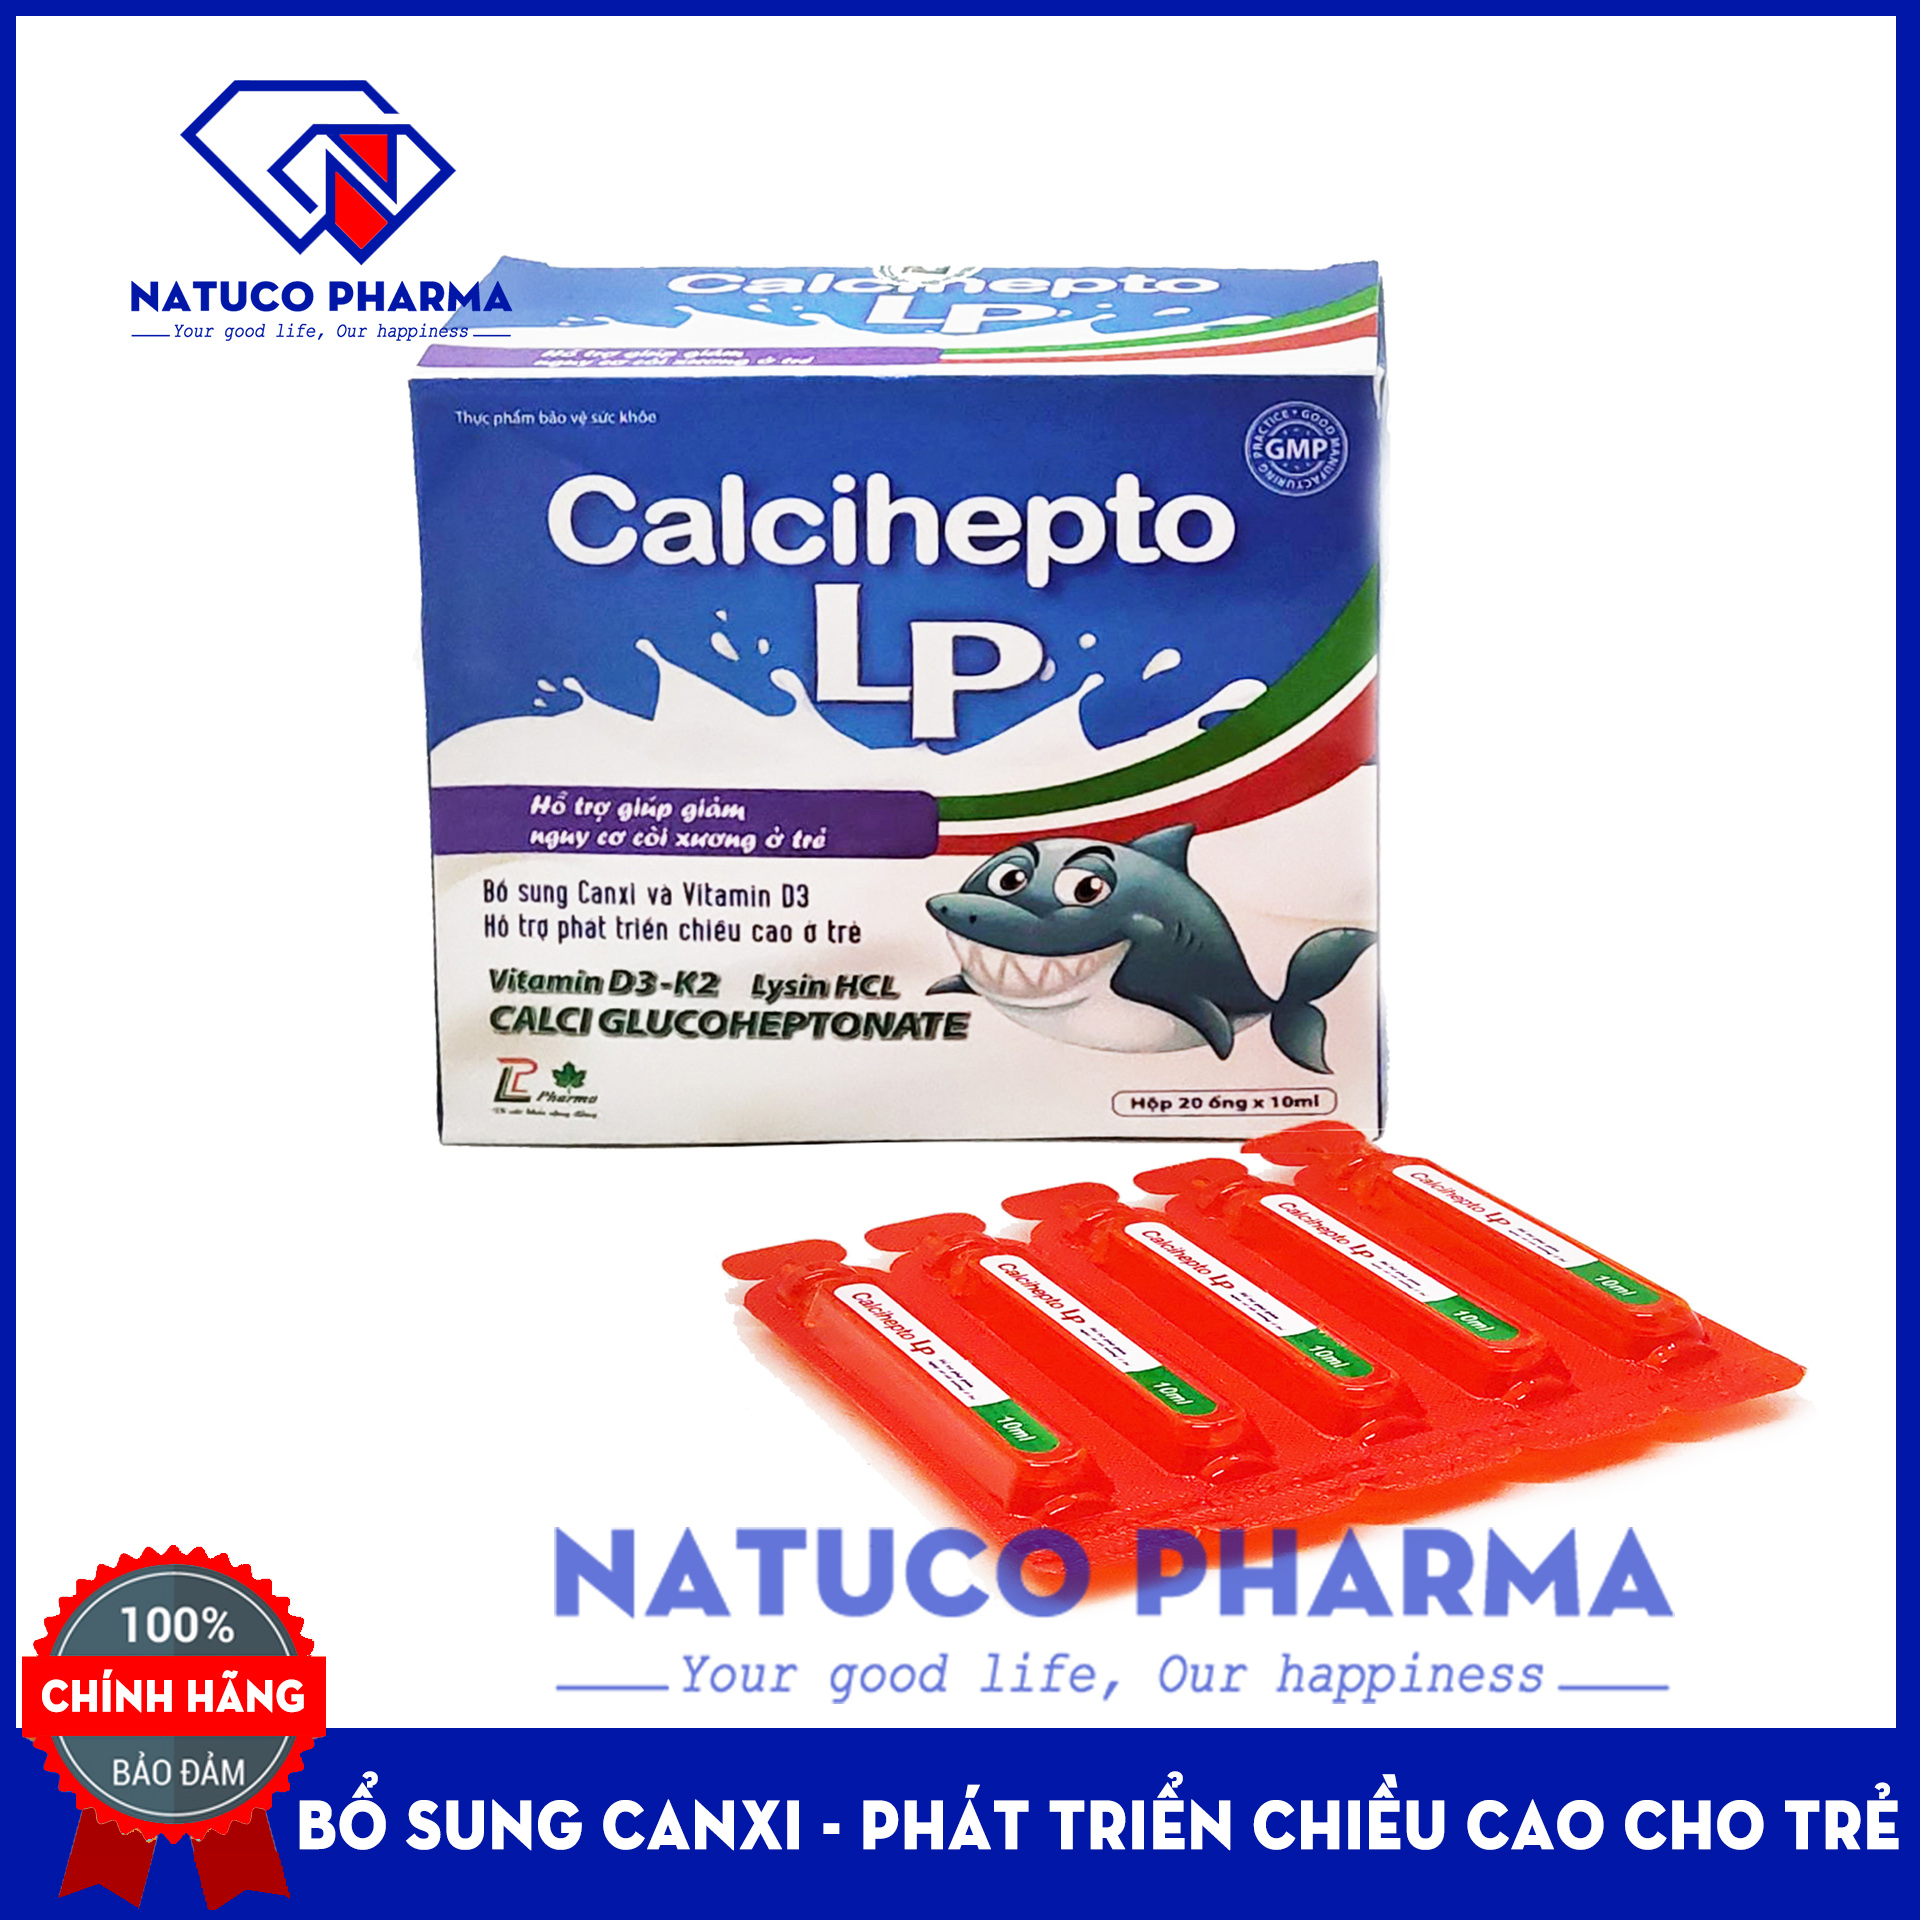 Canxi nước hữu cơ Calcihepto LP - Bổ sung canxi, vitamin D3, K2 an toàn